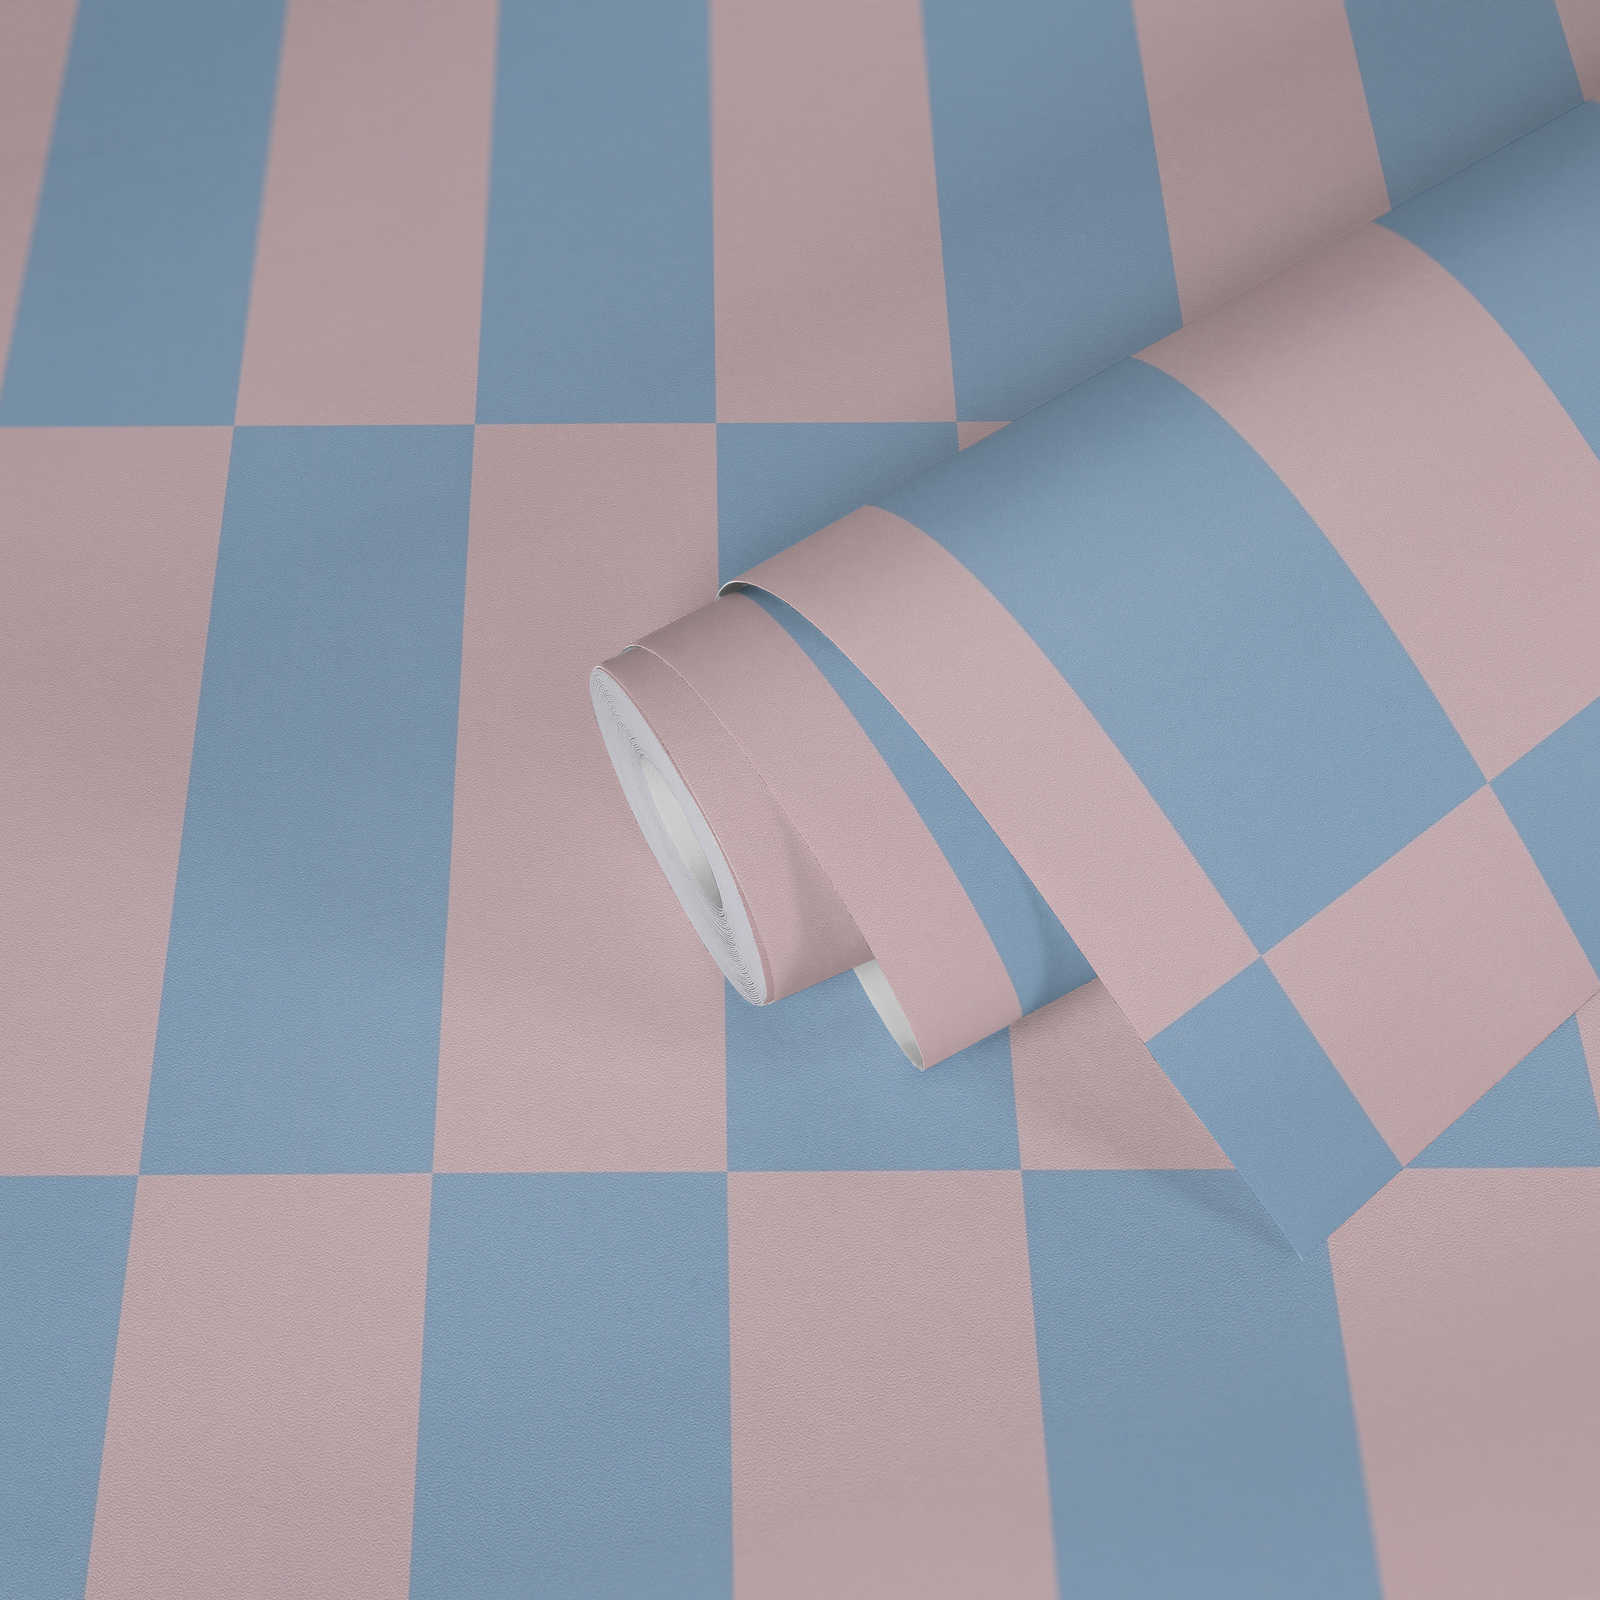             Carta da parati in tessuto non tessuto a quadri grafici bicolore - blu, rosa
        